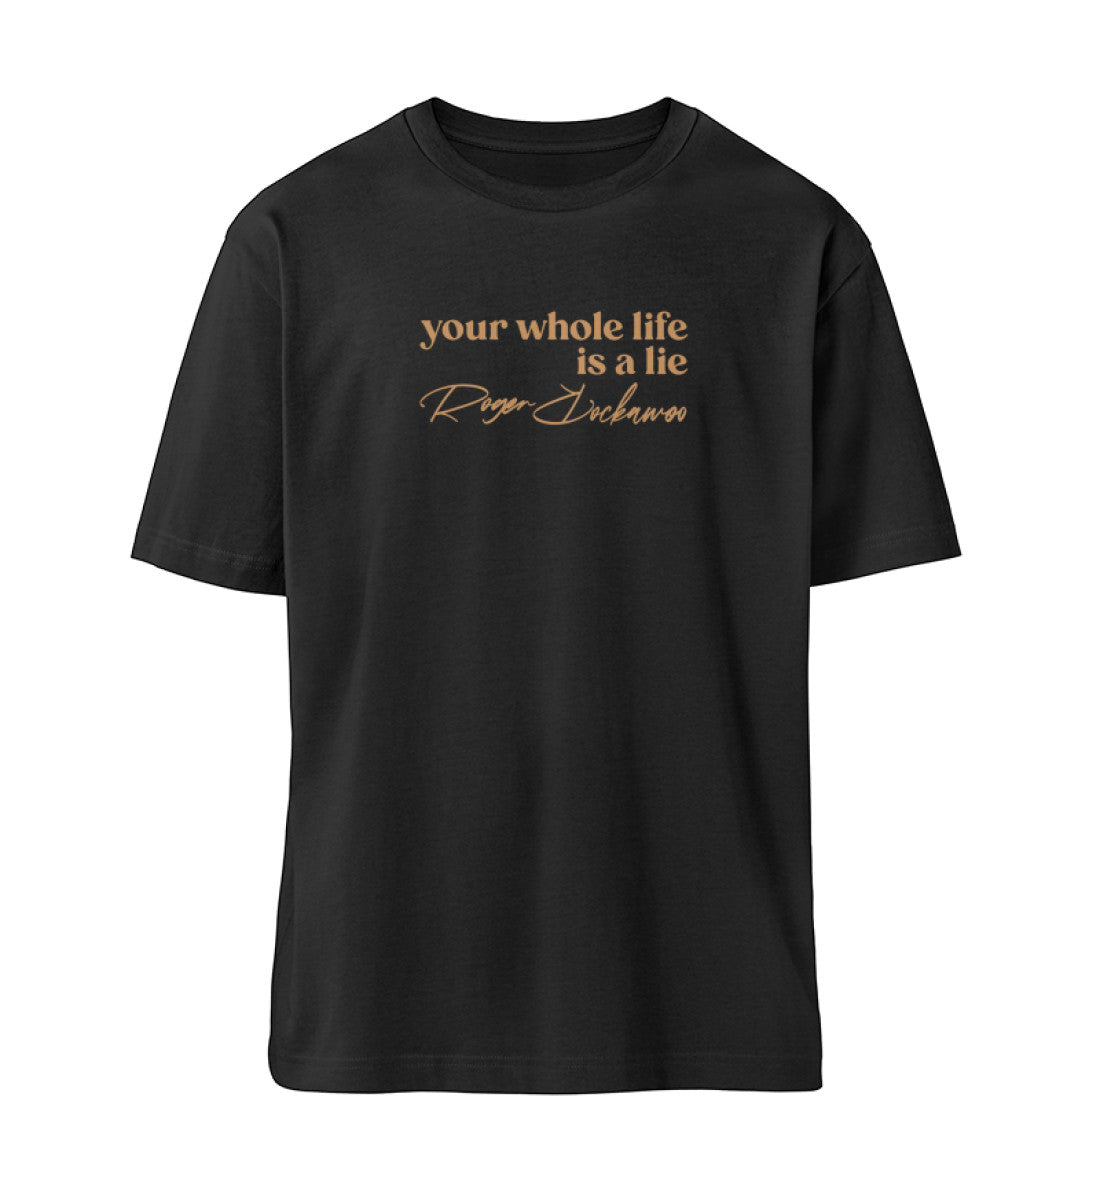 Schwarzes T-Shirt Unisex für Damen und Herren im Relaxed Fit in weiß bedruckt mit dem Design der my whole life is a lie Kollektion von Roger Rockawoo